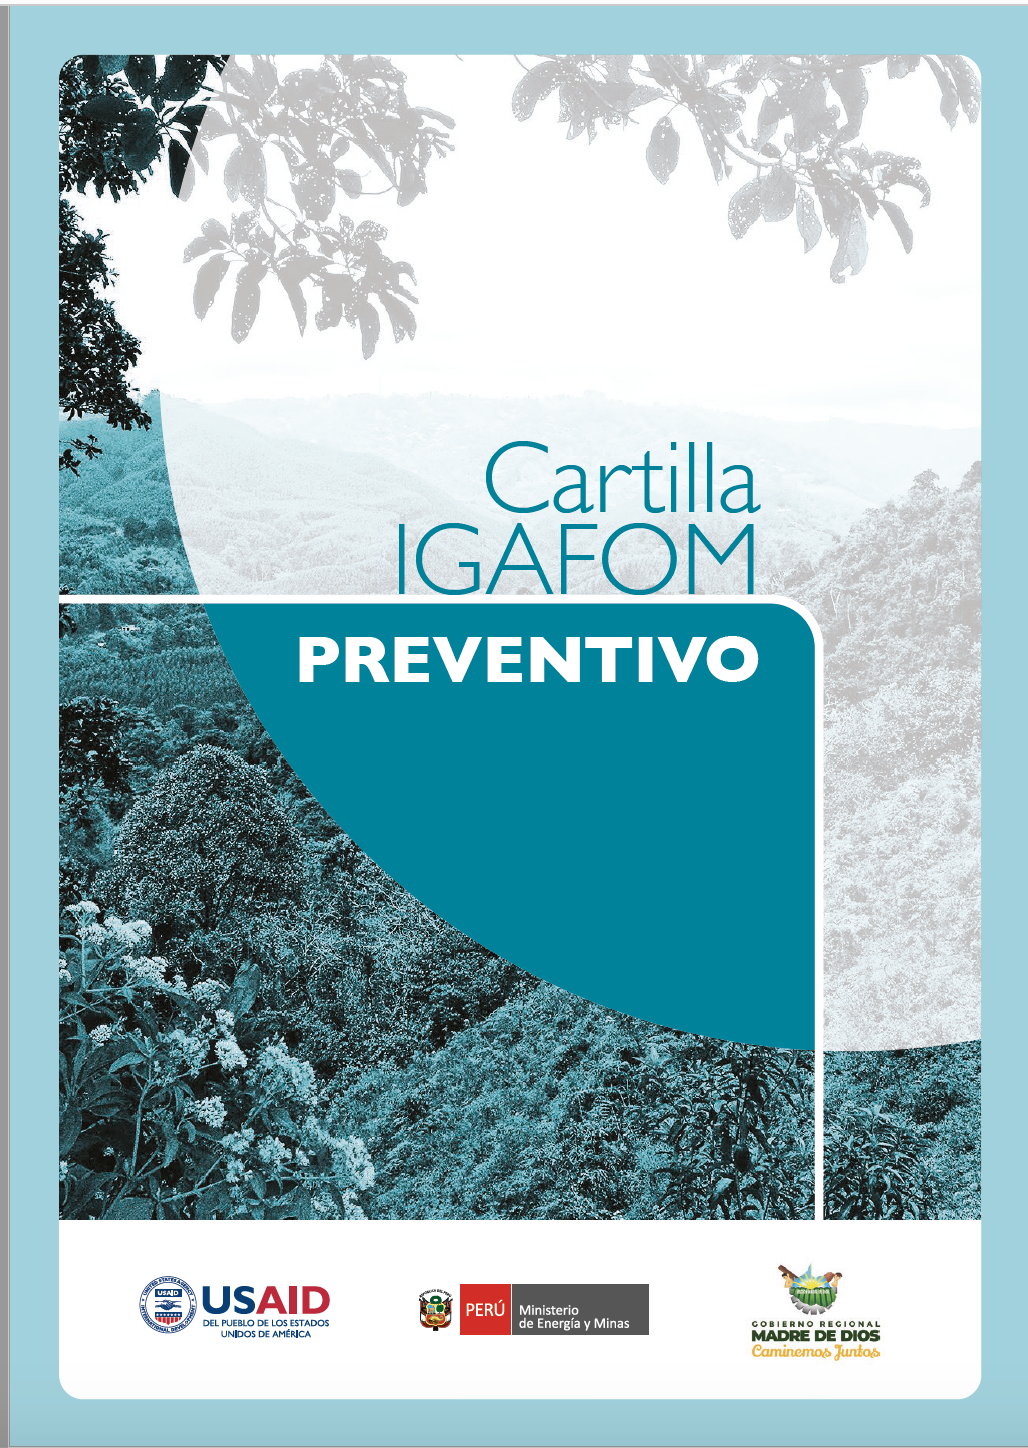 Cartilla del Instrumento de Gestión Ambiental para la Formalización de Actividades de Pequeña Minería y Minería Artesanal (IGAFOM) Preventivo.